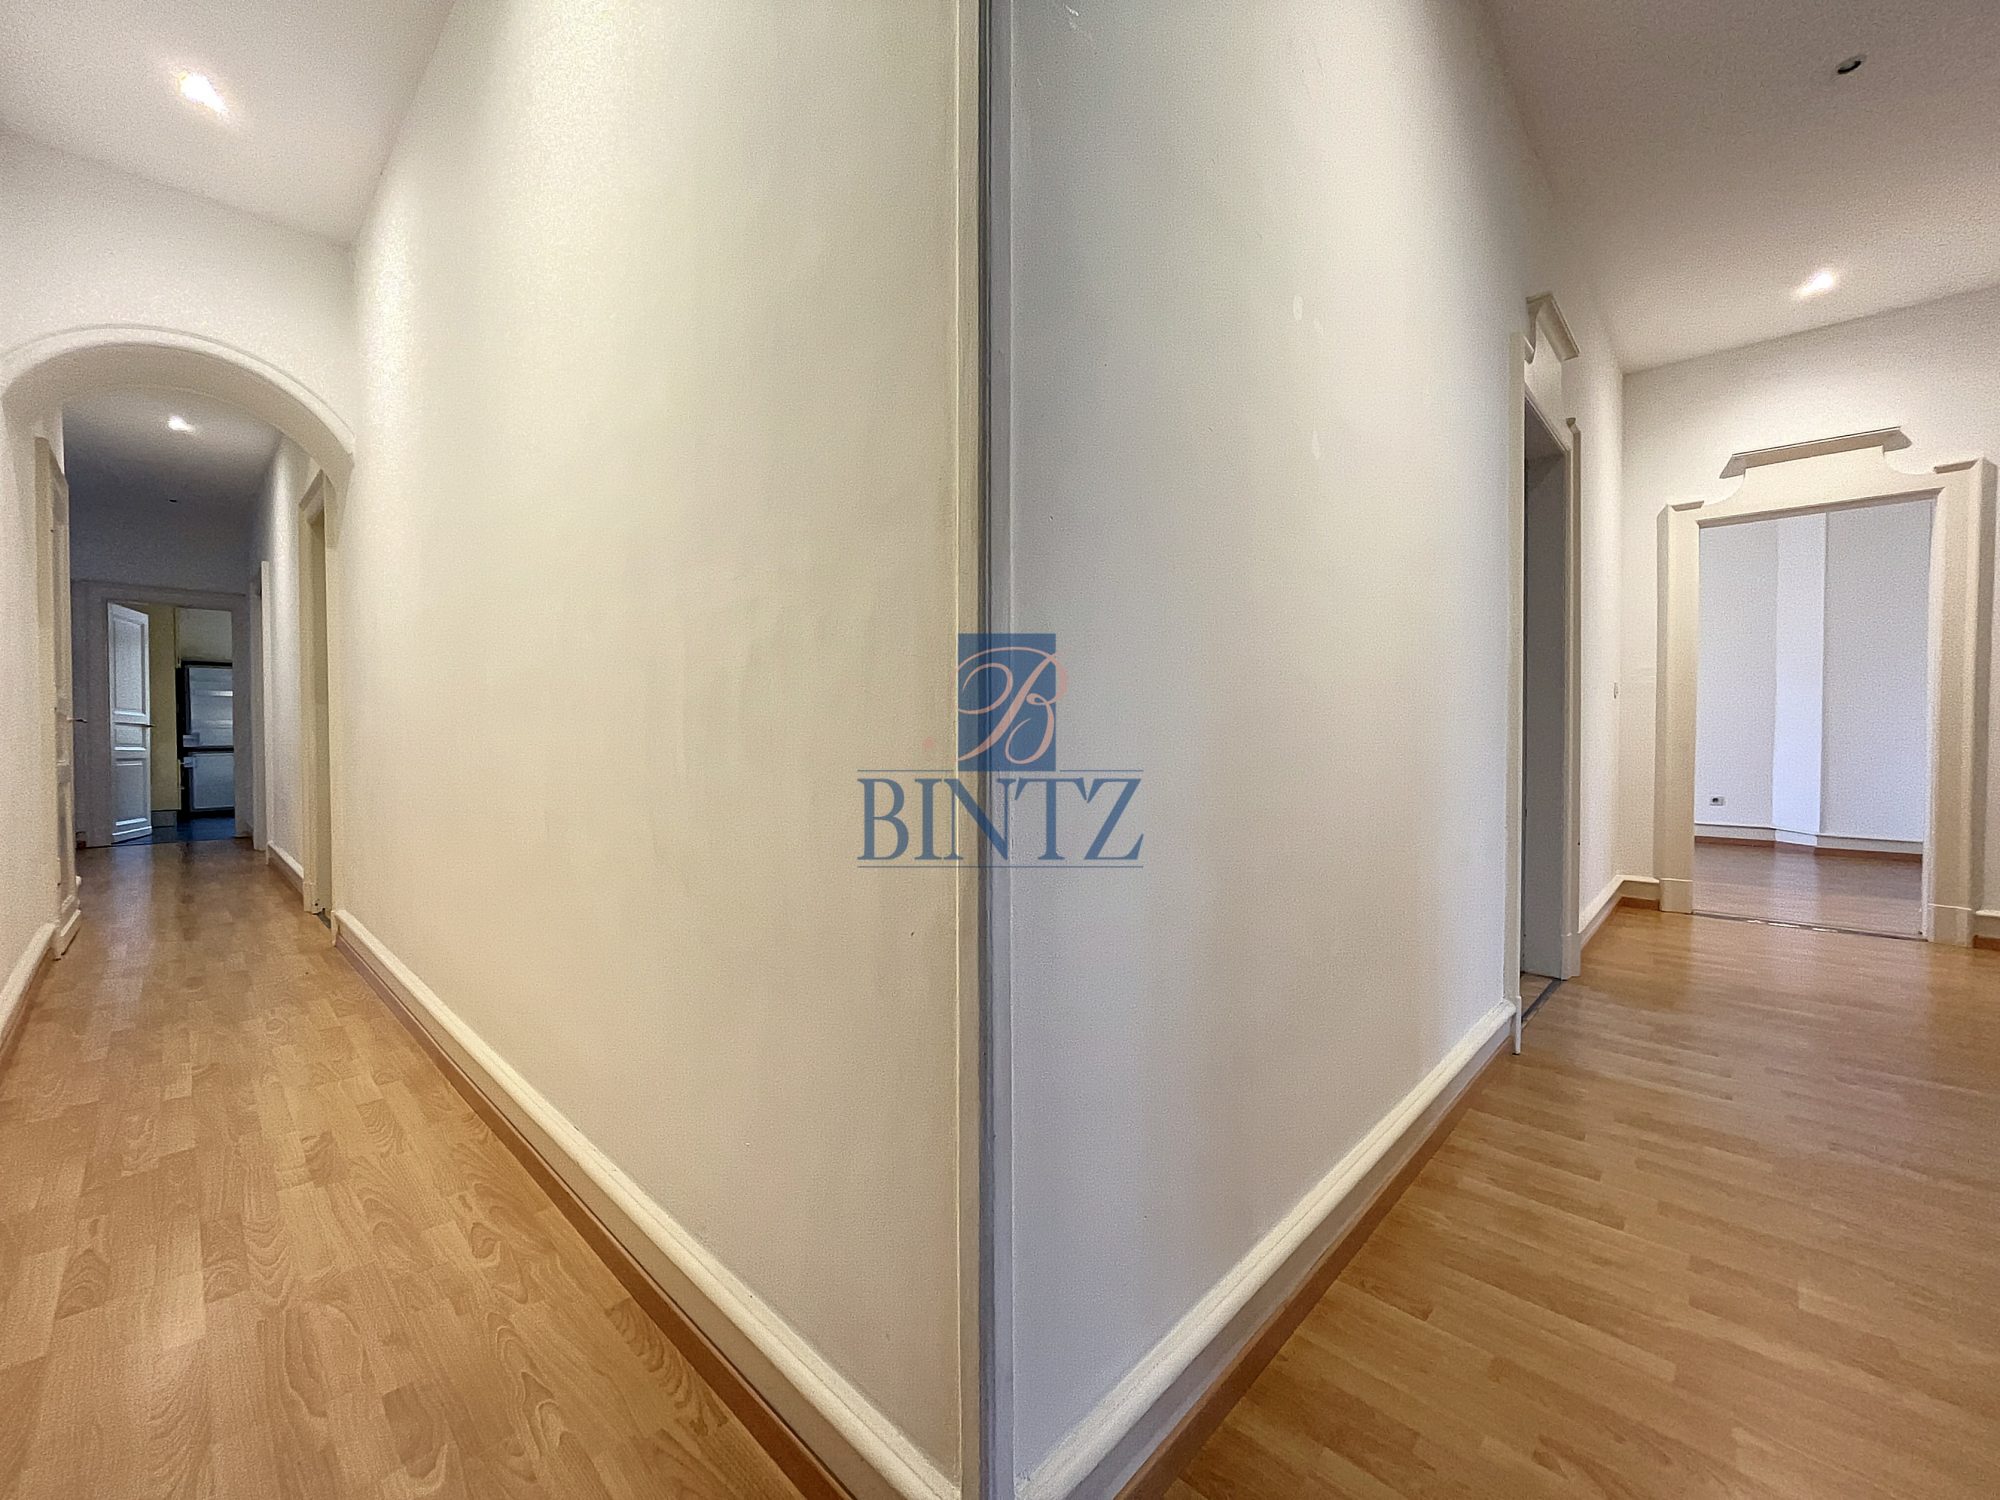 Exceptionnel 5 pièces avec balcon - location appartement Strasbourg - Bintz Immobilier - 14